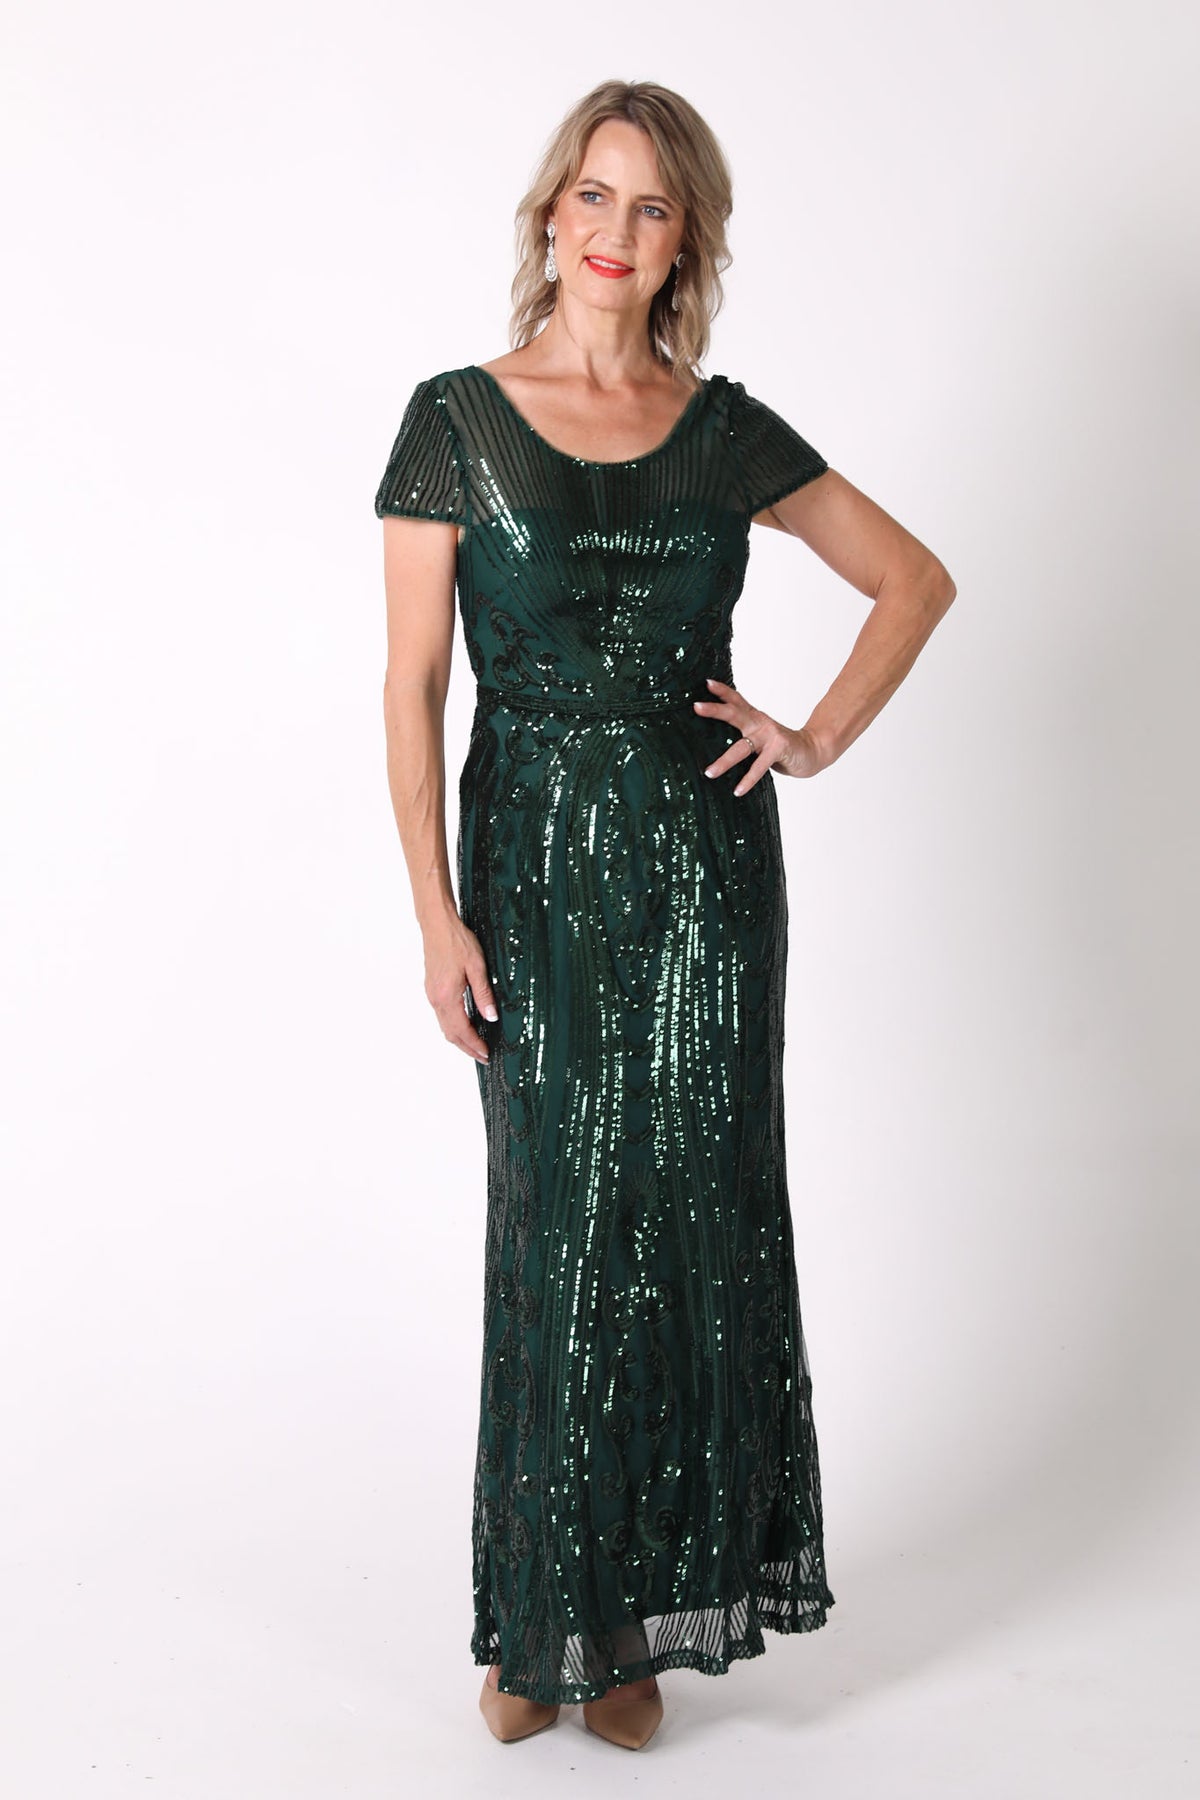 Greta Sequin Maxi Dress - Emerald Green